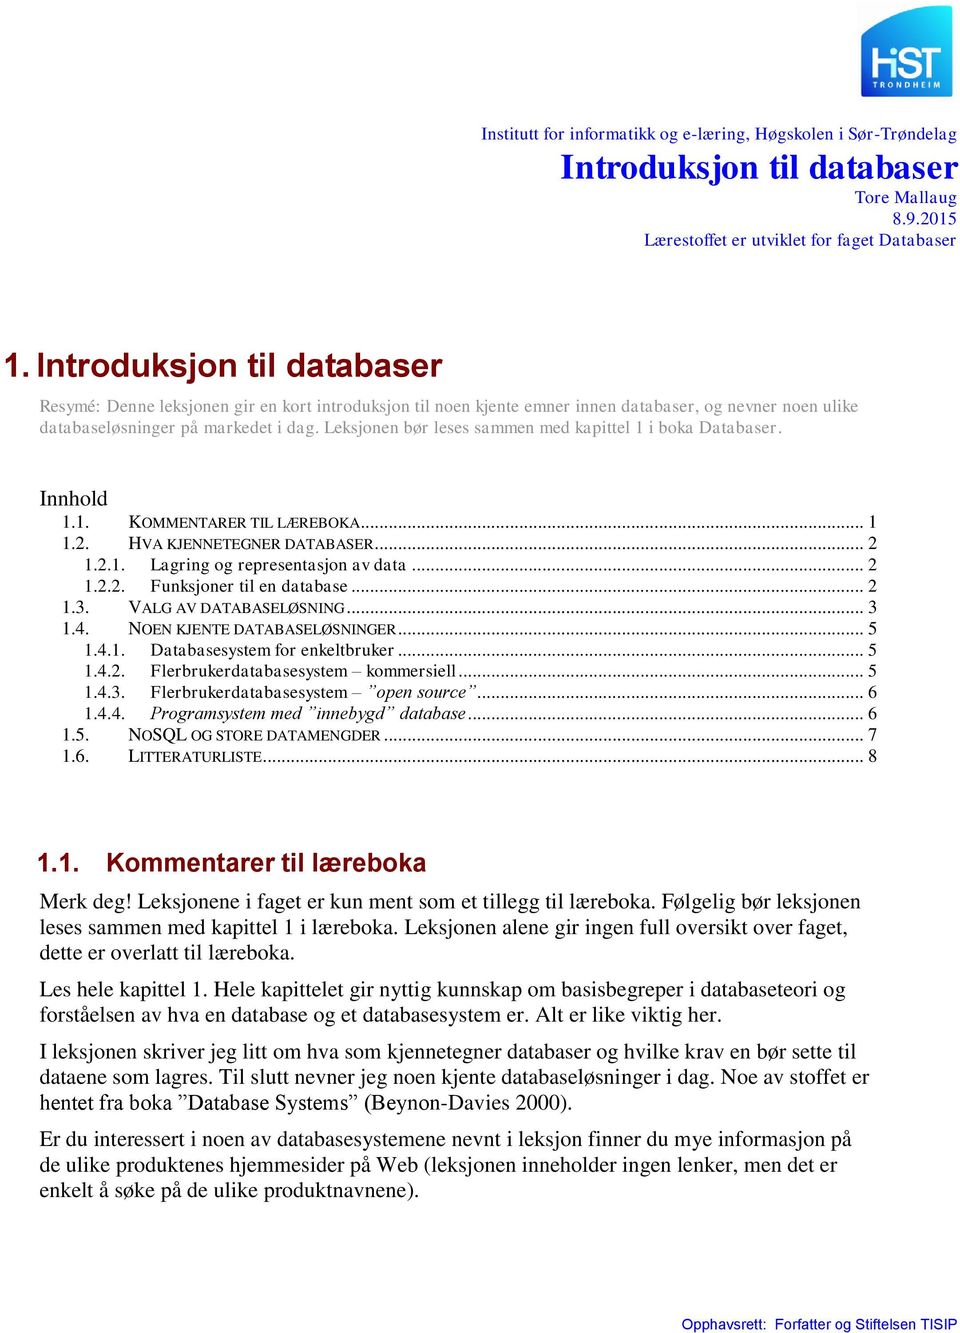 Leksjonen bør leses sammen med kapittel 1 i boka Databaser. Innhold 1.1. KOMMENTARER TIL LÆREBOKA... 1 1.2. HVA KJENNETEGNER DATABASER... 2 1.2.1. Lagring og representasjon av data... 2 1.2.2. Funksjoner til en database.